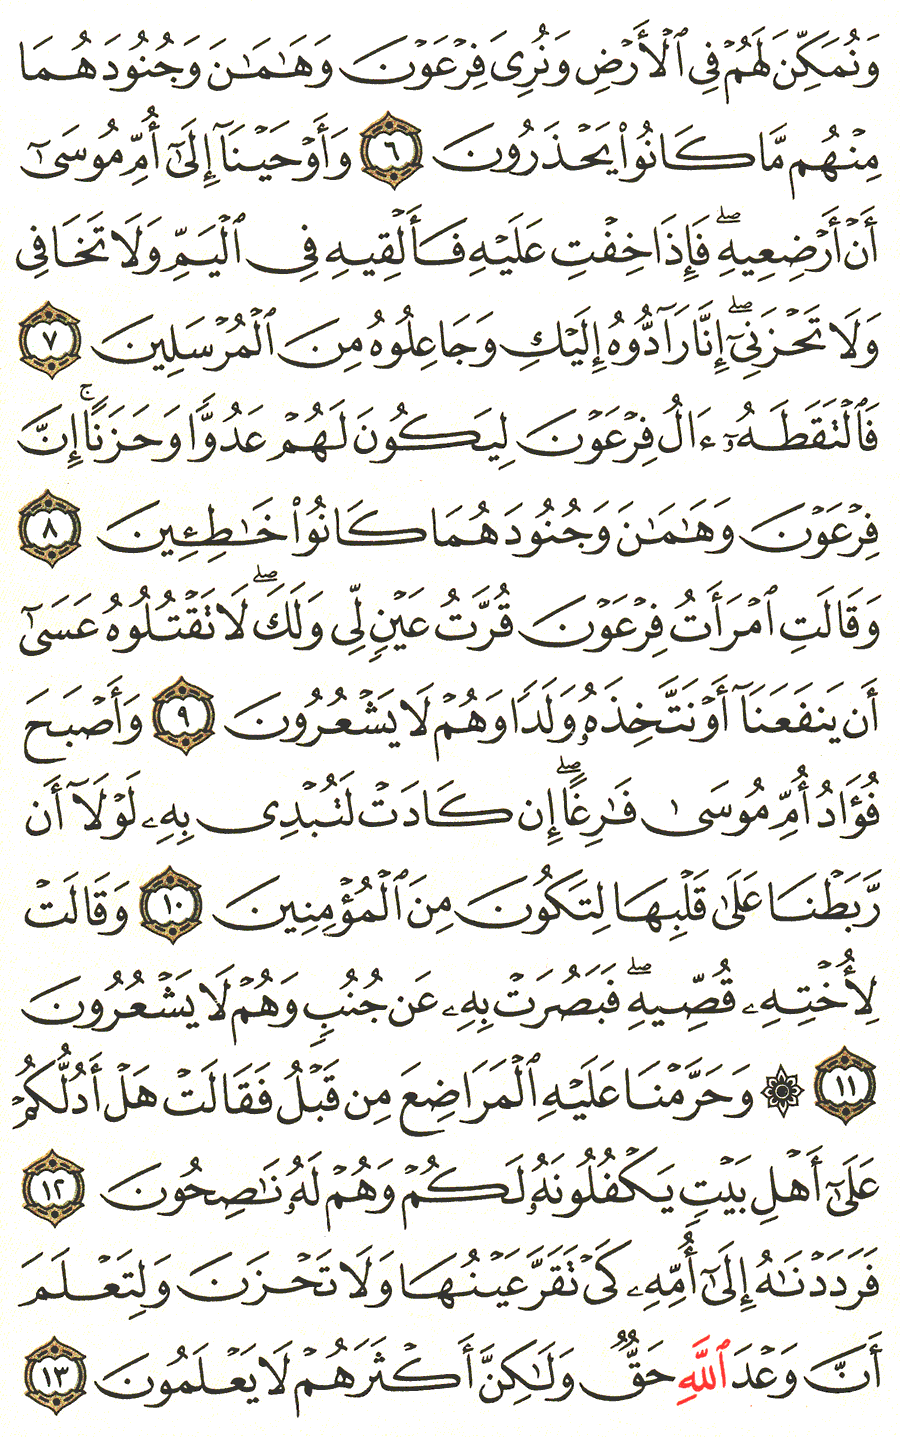 الصفحة رقم 386  من القرآن الكريم مكتوبة من المصحف